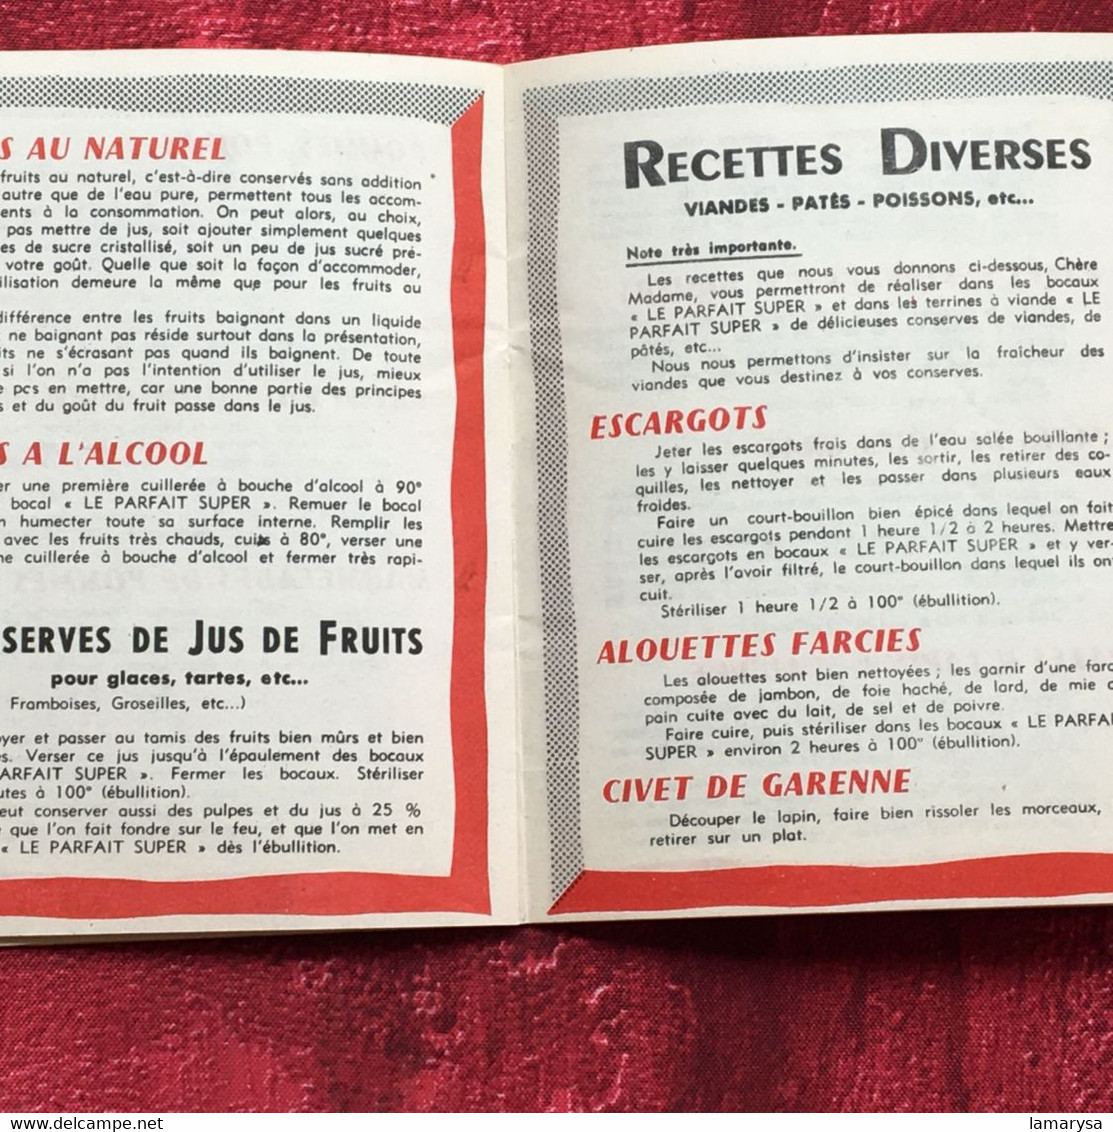 Le Parfait"Super"-Conserve-Bocal-Terrine-☛Publicité vintage-☛Facture Document commercial dépliant publicitaire Droguerie